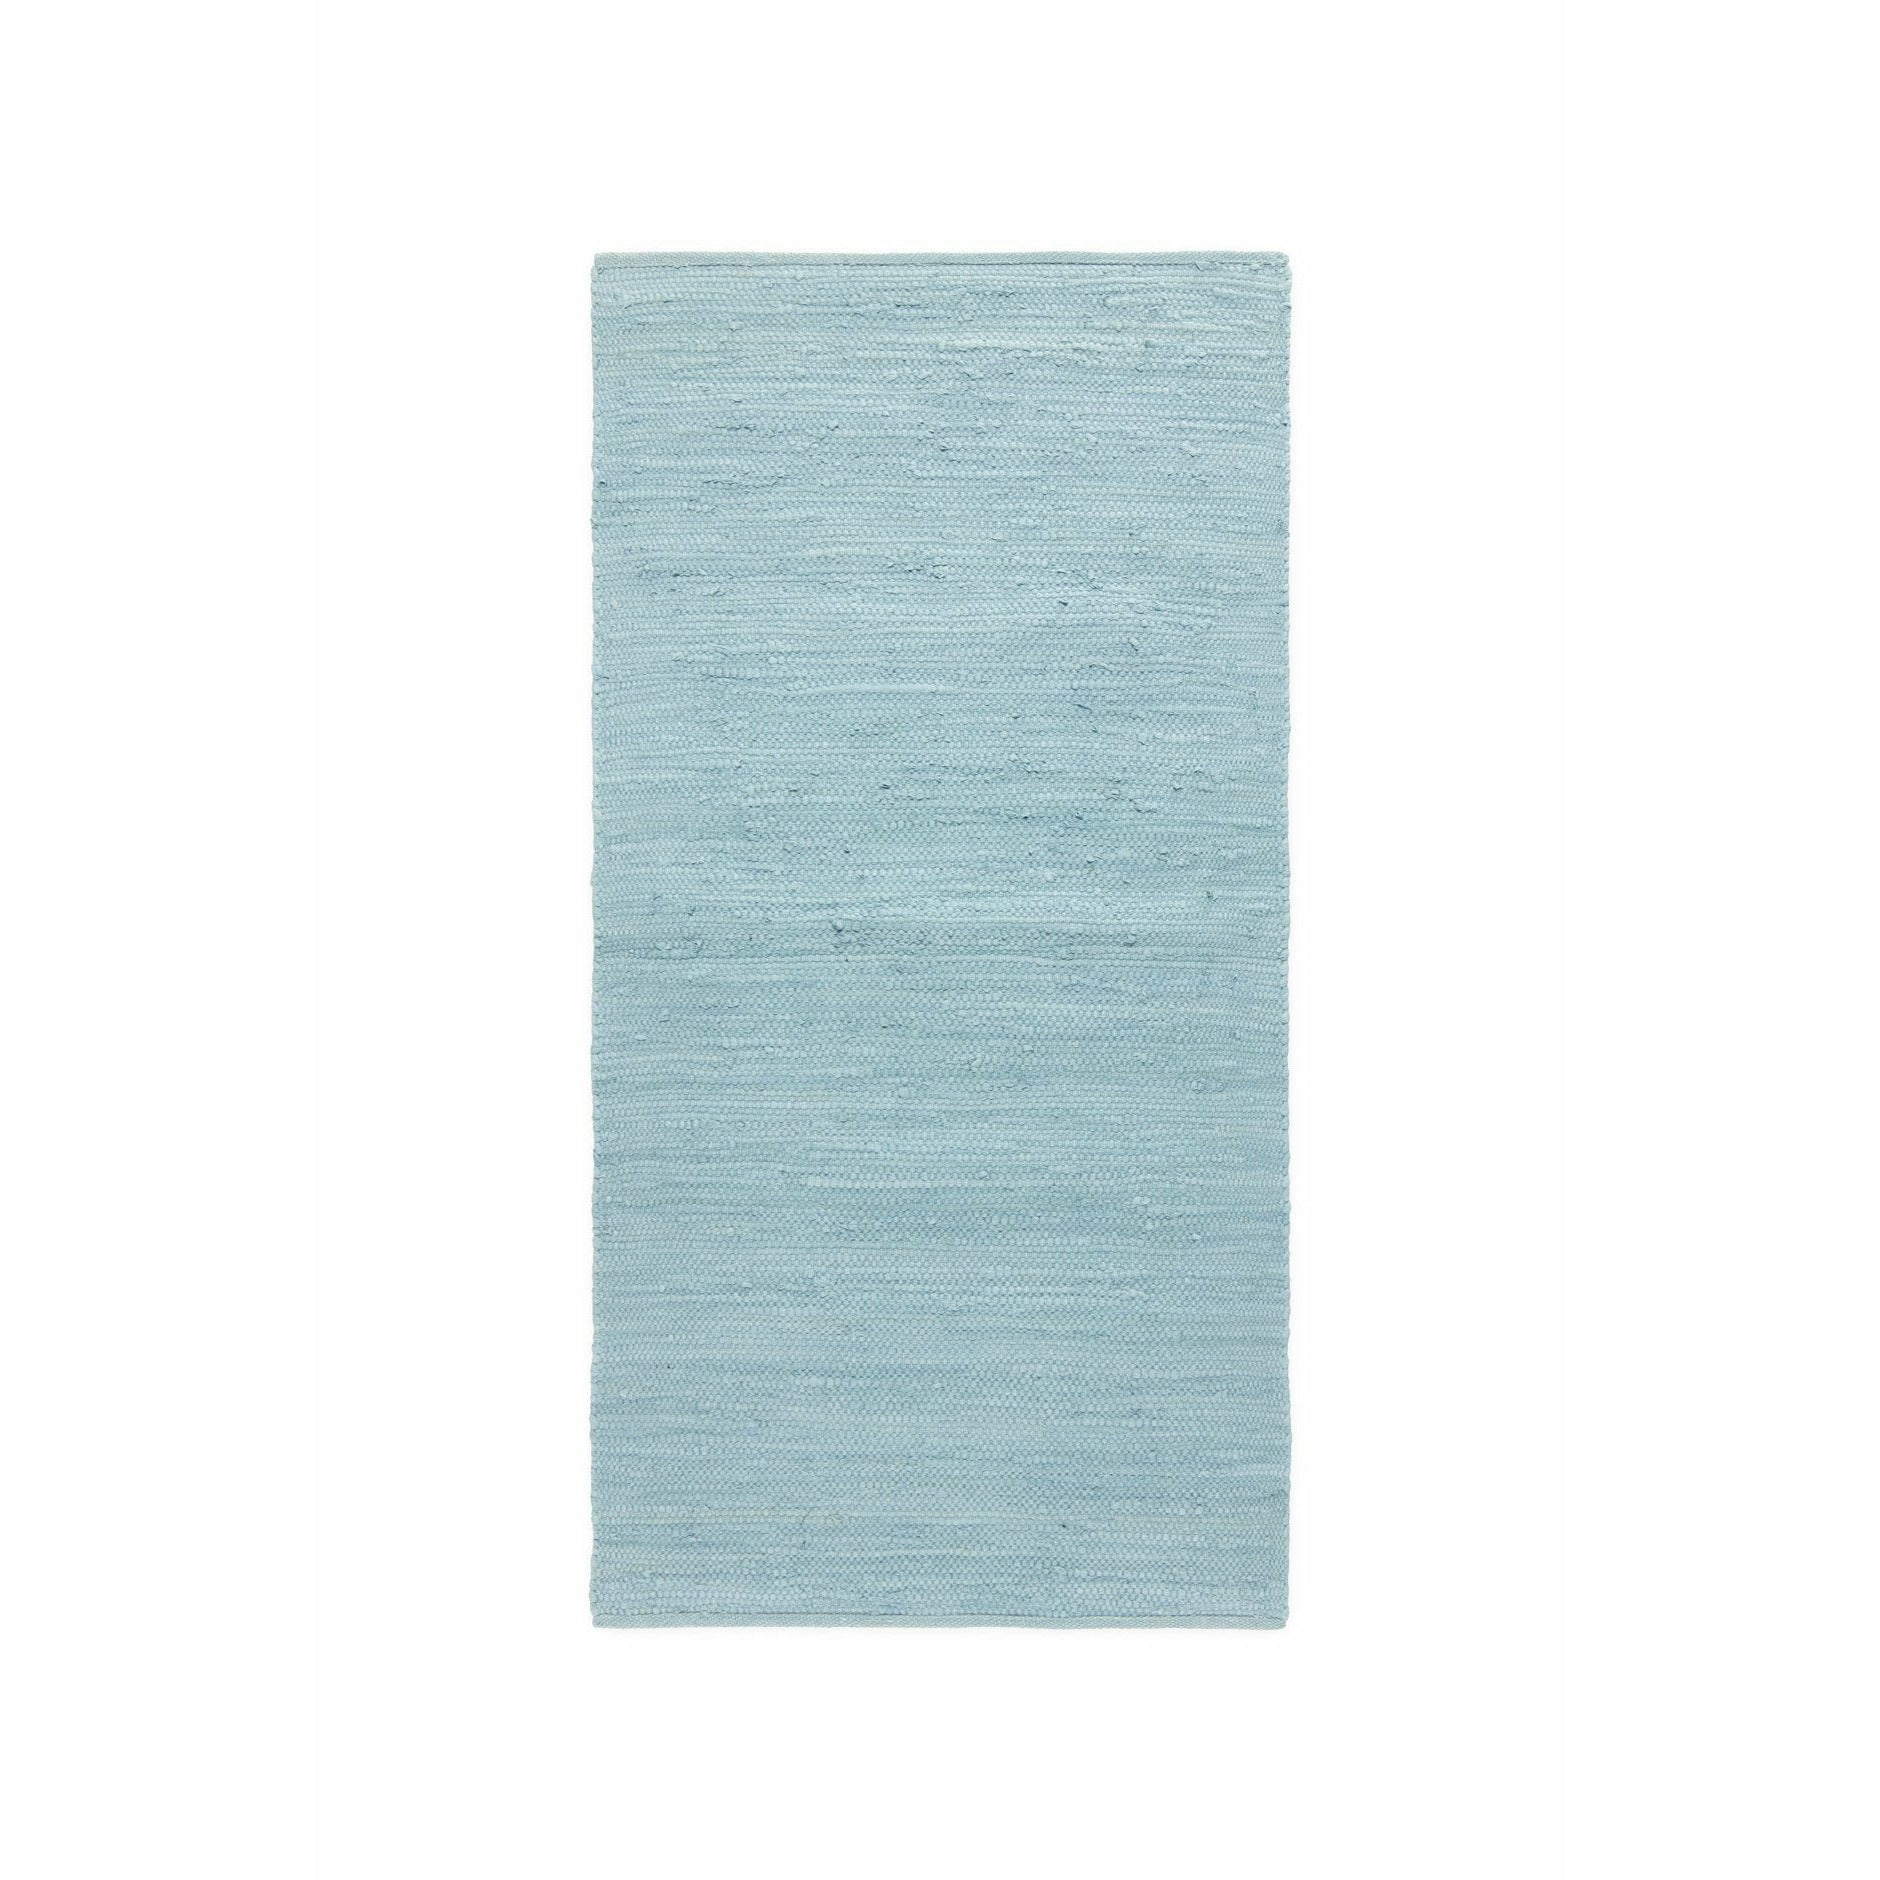 Rug solid bomulls tepp dagdrøm blå, 170 x 240 cm